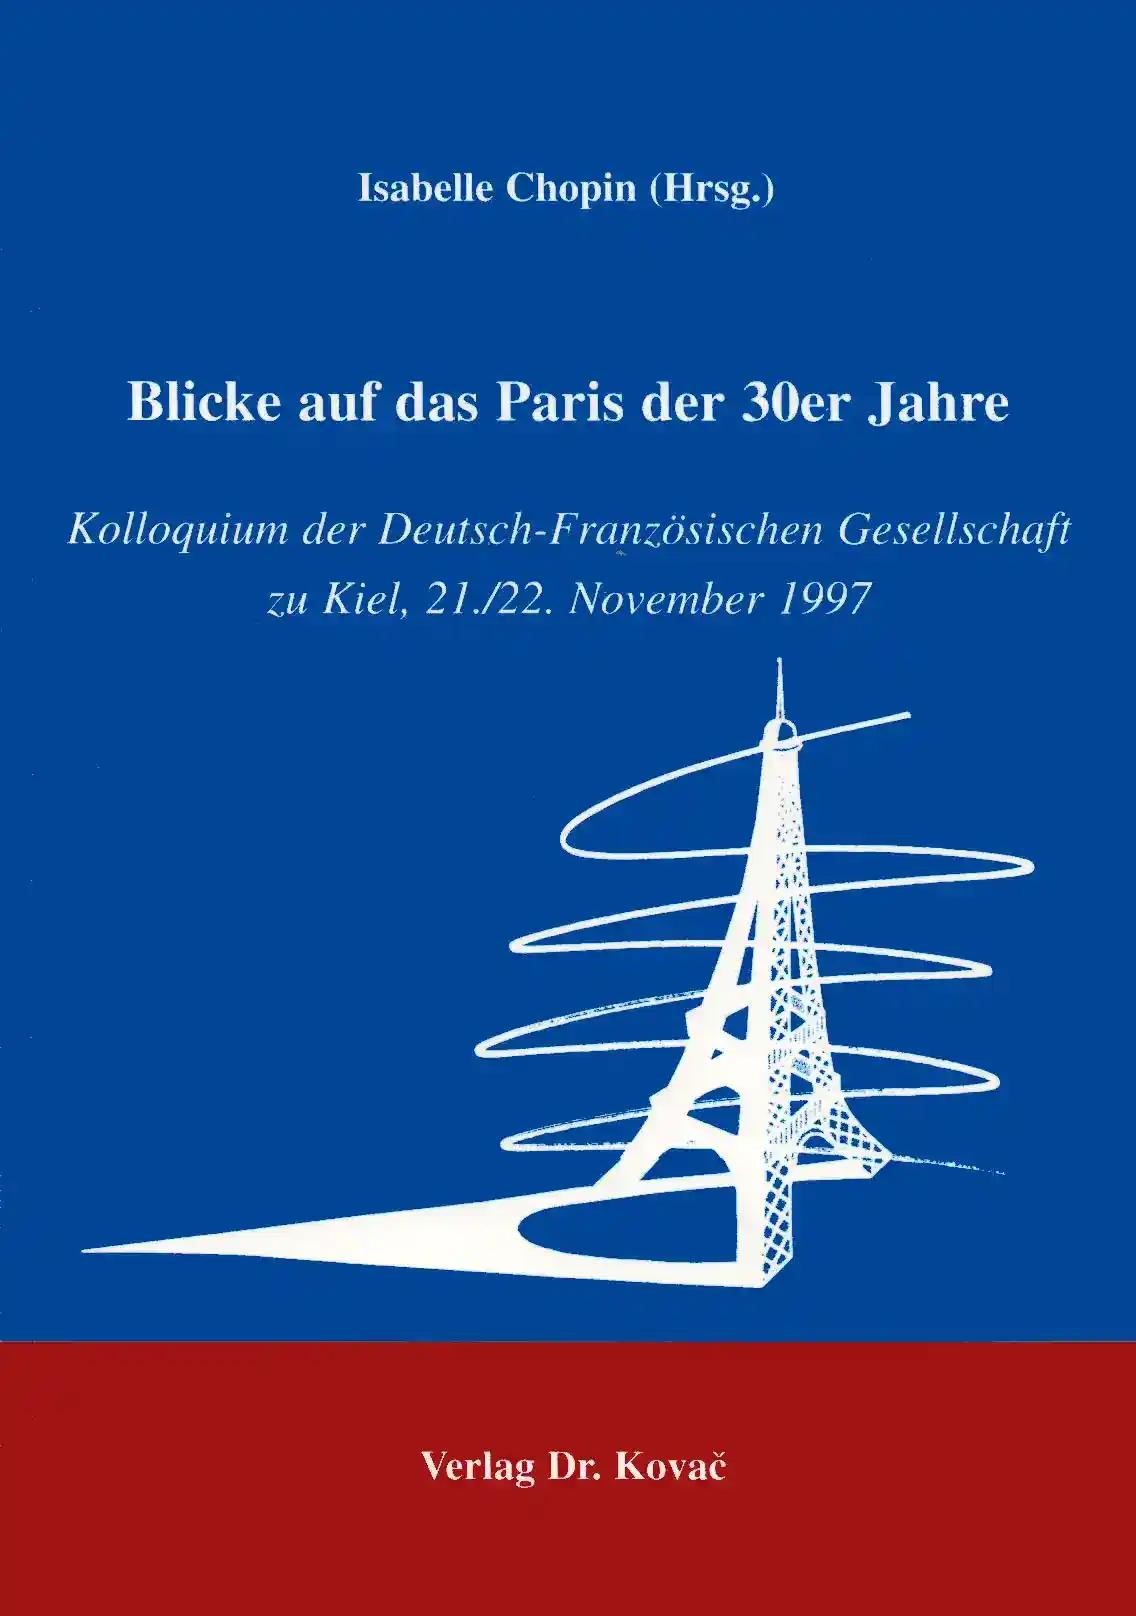 Blick auf das Paris der 30er Jahre, Kolloquium der Deutsch-FranzÃ sischen Gesellschaft zu Kiel 22./23. November 1997 - Isabelle Chopin